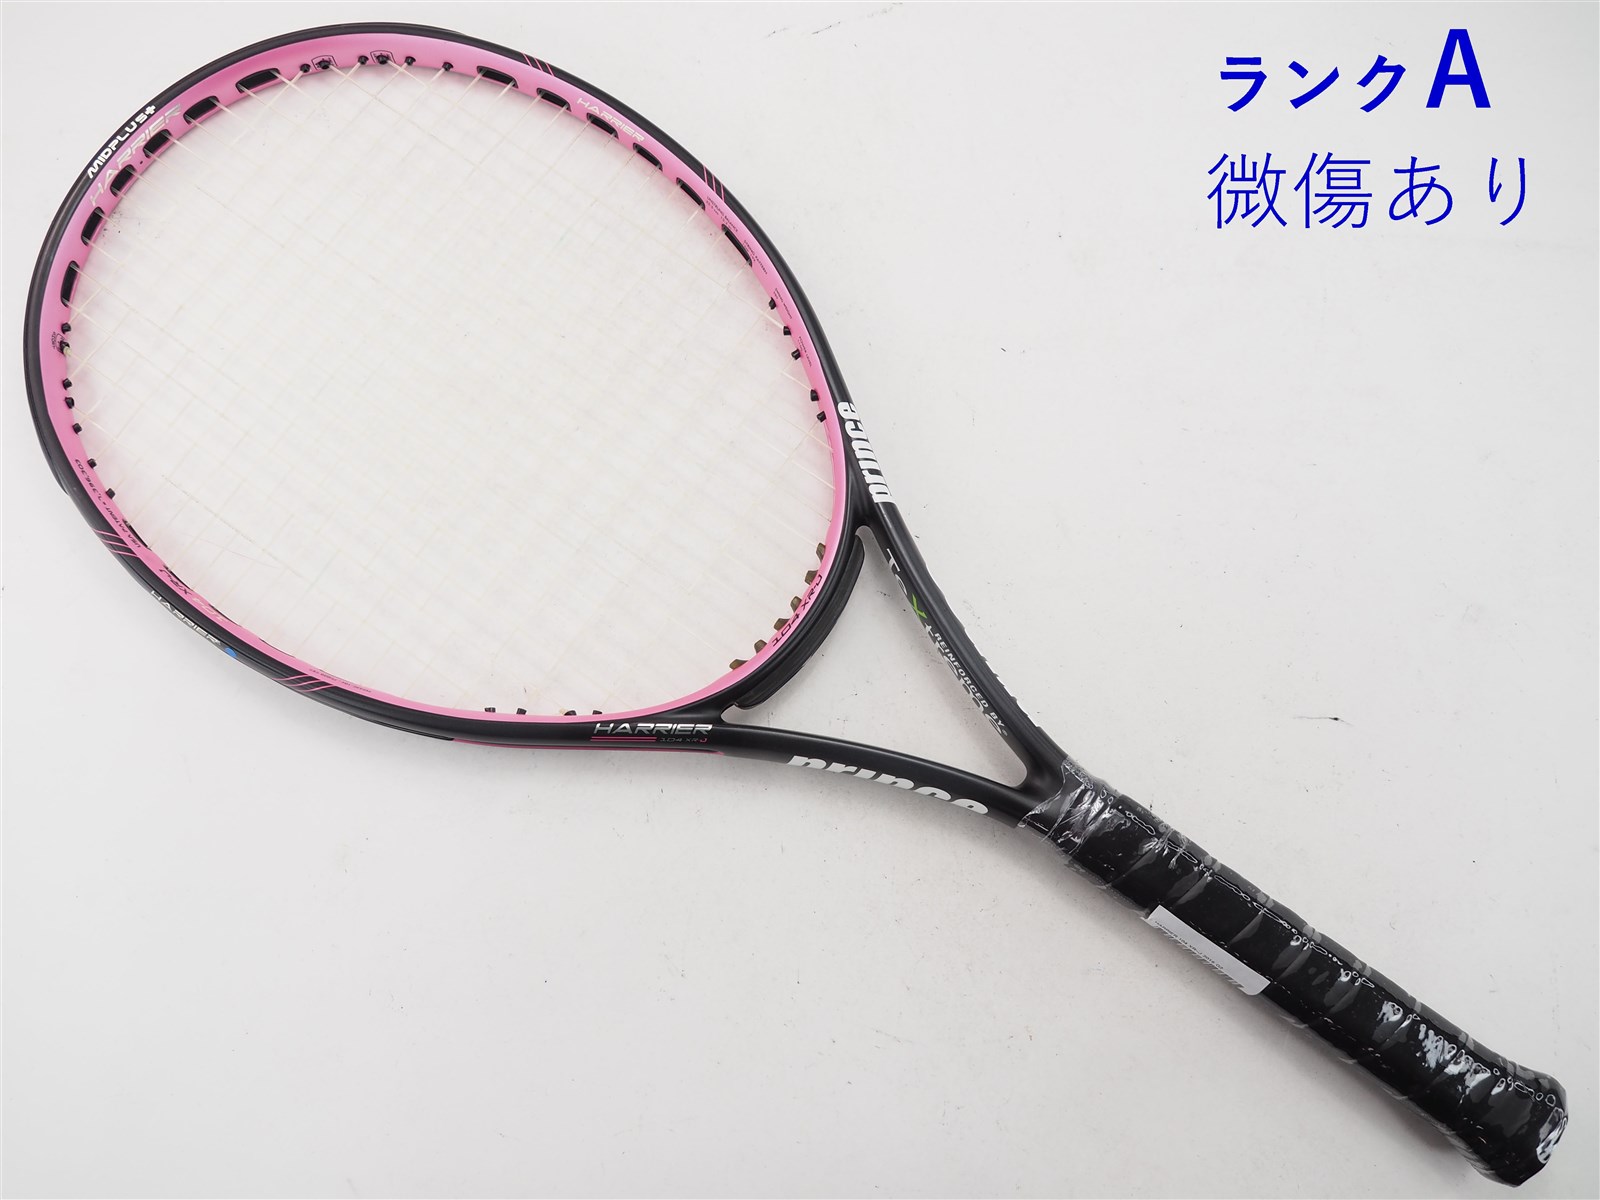 テニスラケット プリンス ハリアー プロ 100 エックスアール 2015年モデル (G3)PRINCE HARRIER PRO 100 XR 201524-26-23mm重量